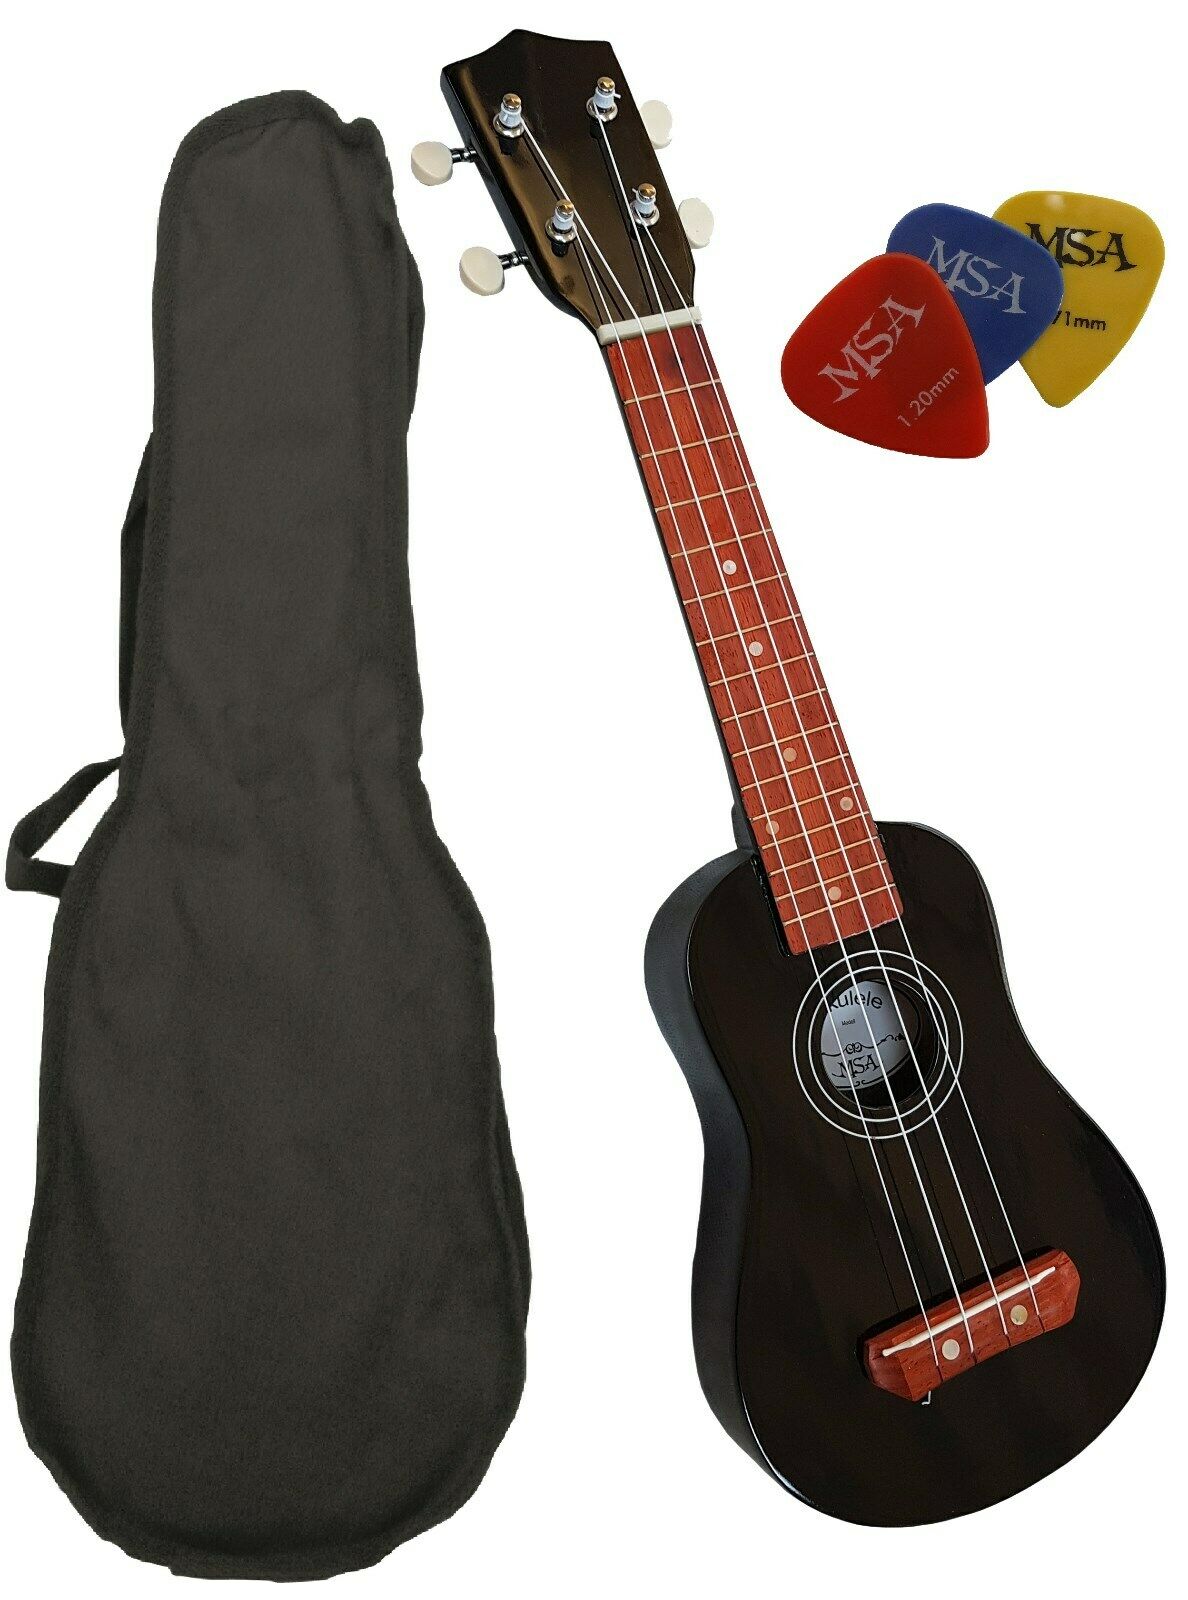 Sopránové ukulele MSA-UK6 černé 